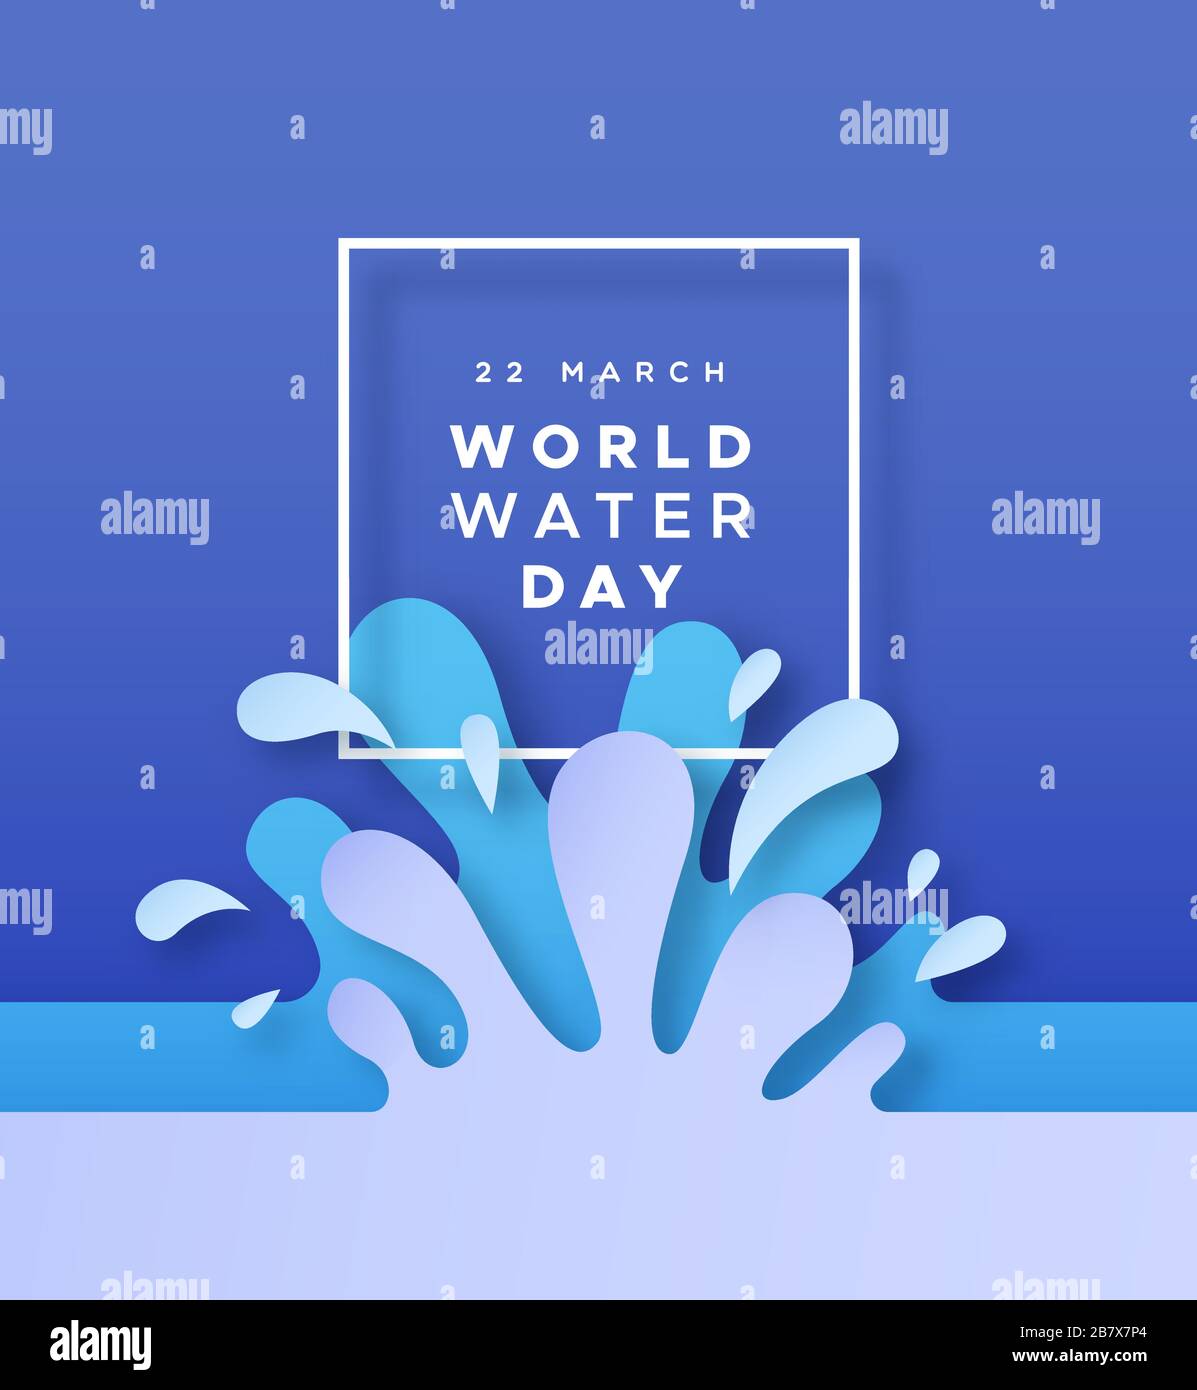 Weltwassertag Grußkarte Illustration von Waters Drop Splash for Environment helfen Kampagnenkonzept. PaperCut Craft Ecology Design in 3D-Schichten PA Stock Vektor